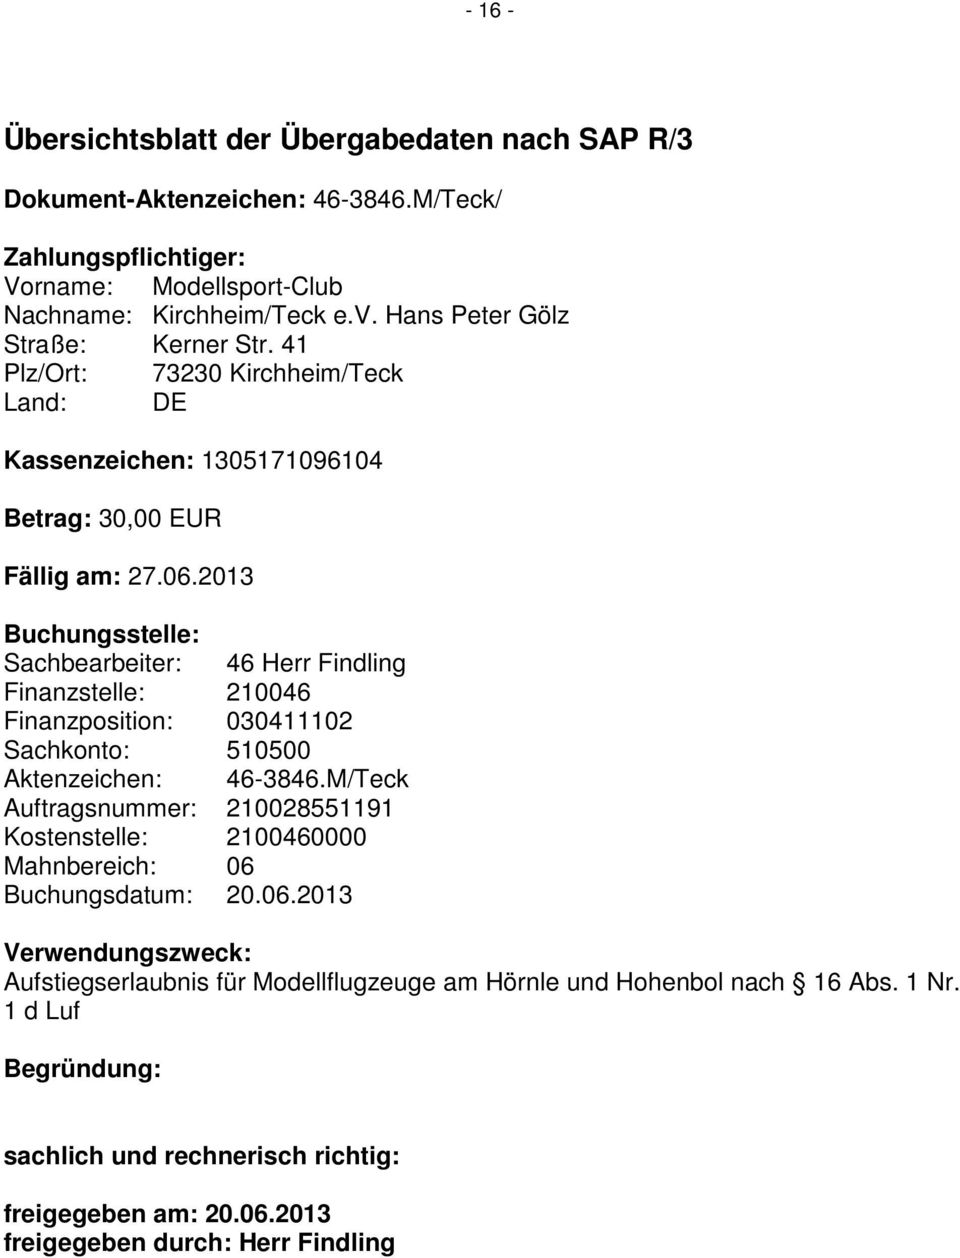 2013 Buchungsstelle: Sachbearbeiter: 46 Herr Findling Finanzstelle: 210046 Finanzposition: 030411102 Sachkonto: 510500 Aktenzeichen: 46-3846.